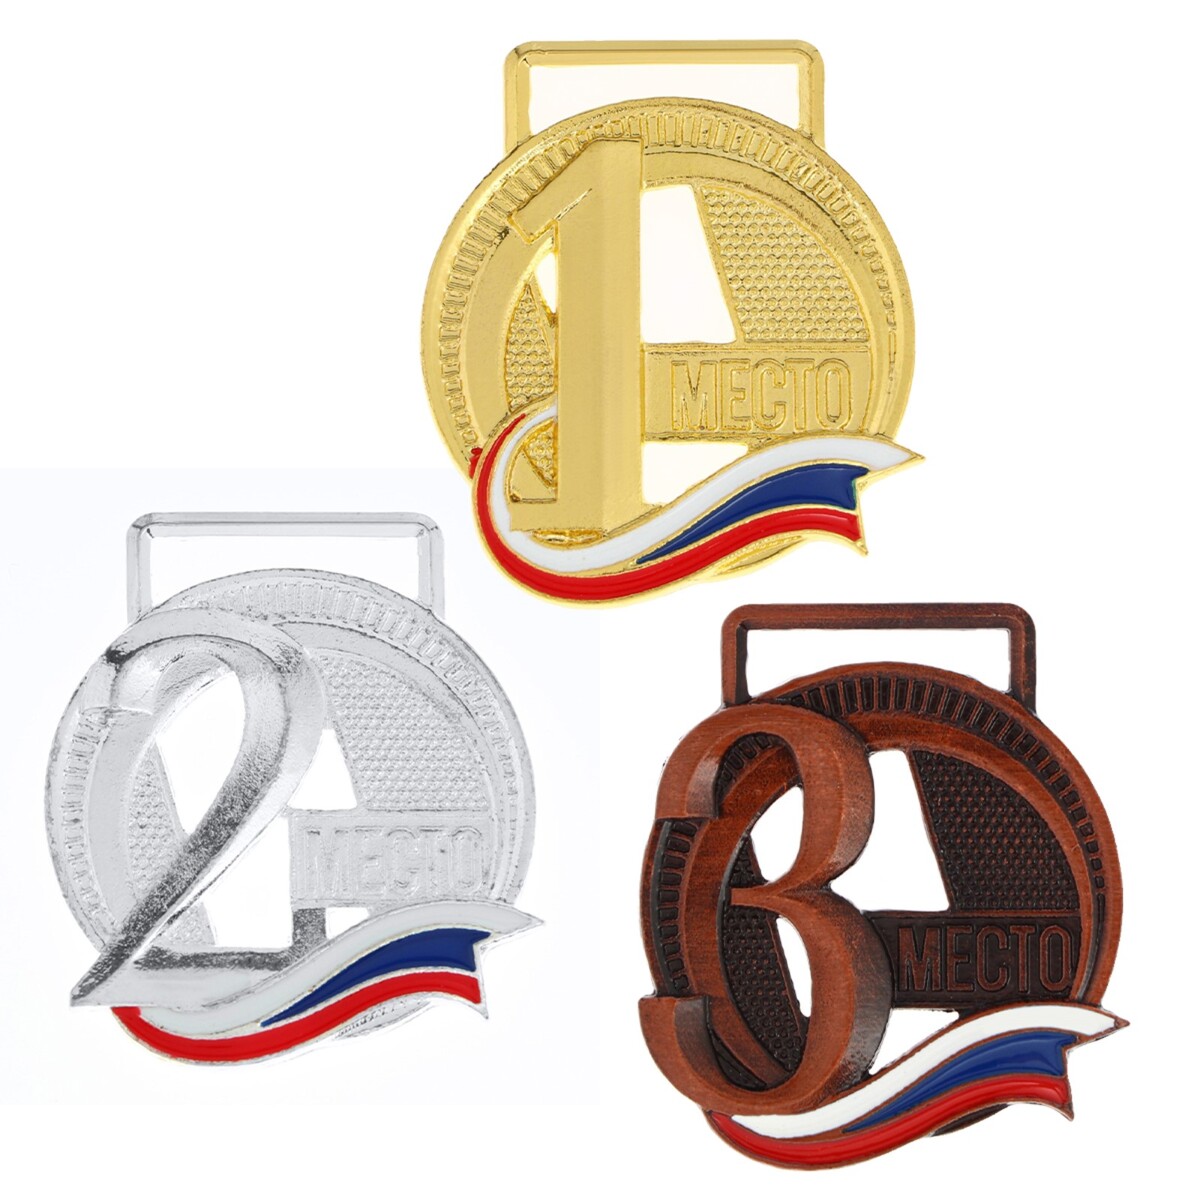 Медаль призовая 194 диам 3.5 см. 3 место, триколор. цвет бронз. без ленты медаль призовая 021 диам 4 см 3 место бронз без ленты